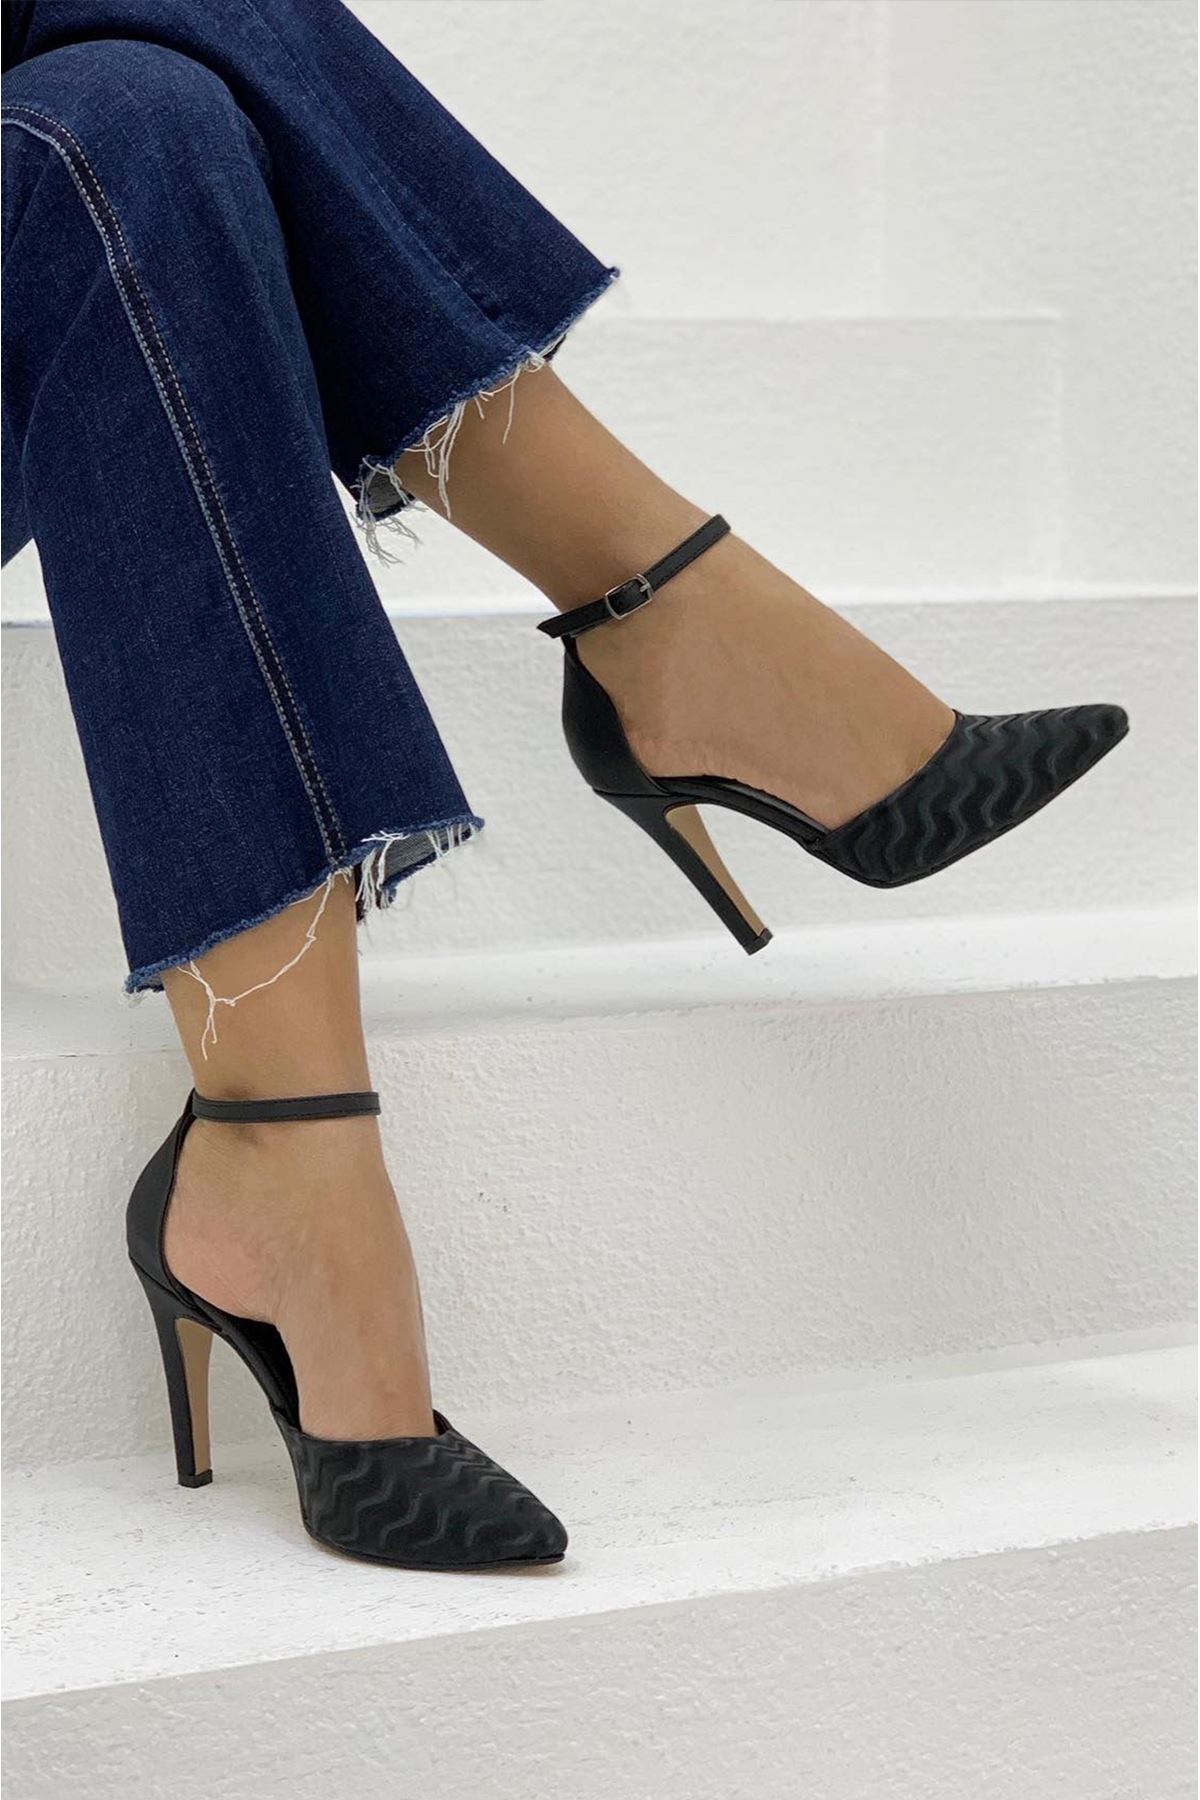 Chanell Siyah Bayan Topuklu Ayakkabı